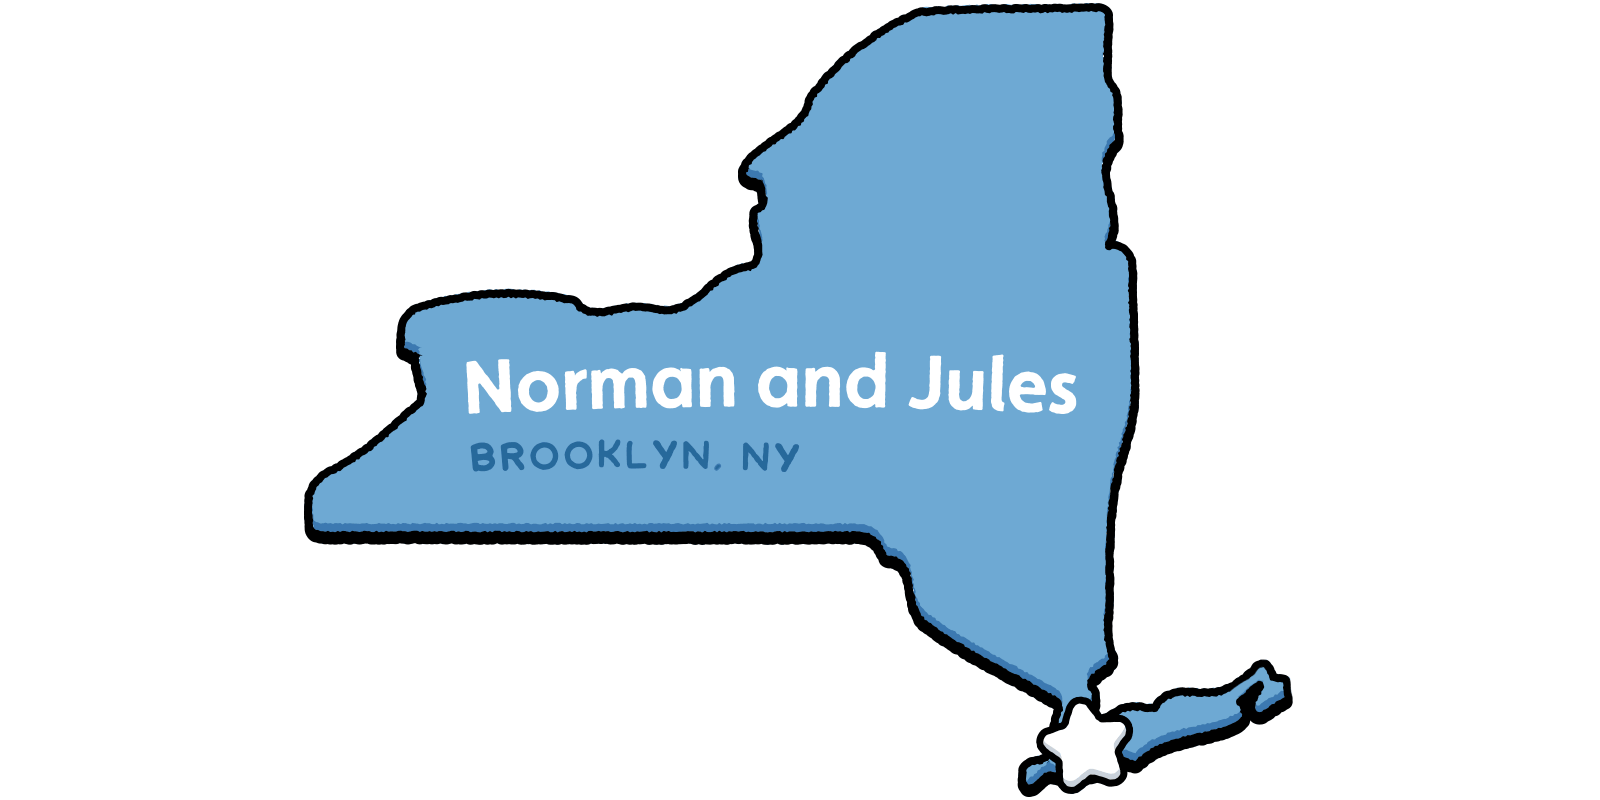 Norman and Jules - Brooklyn, NY